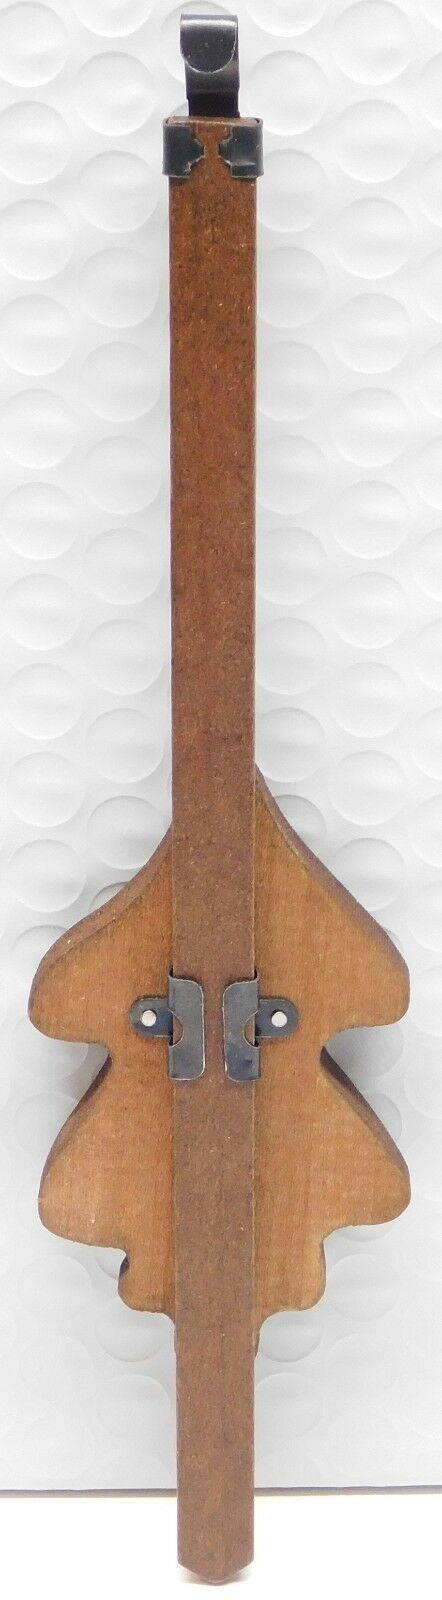 Cuckoo Clock Pendulum 2" Wide Oak Leaf Style Brown German Made 7 1/2" Length